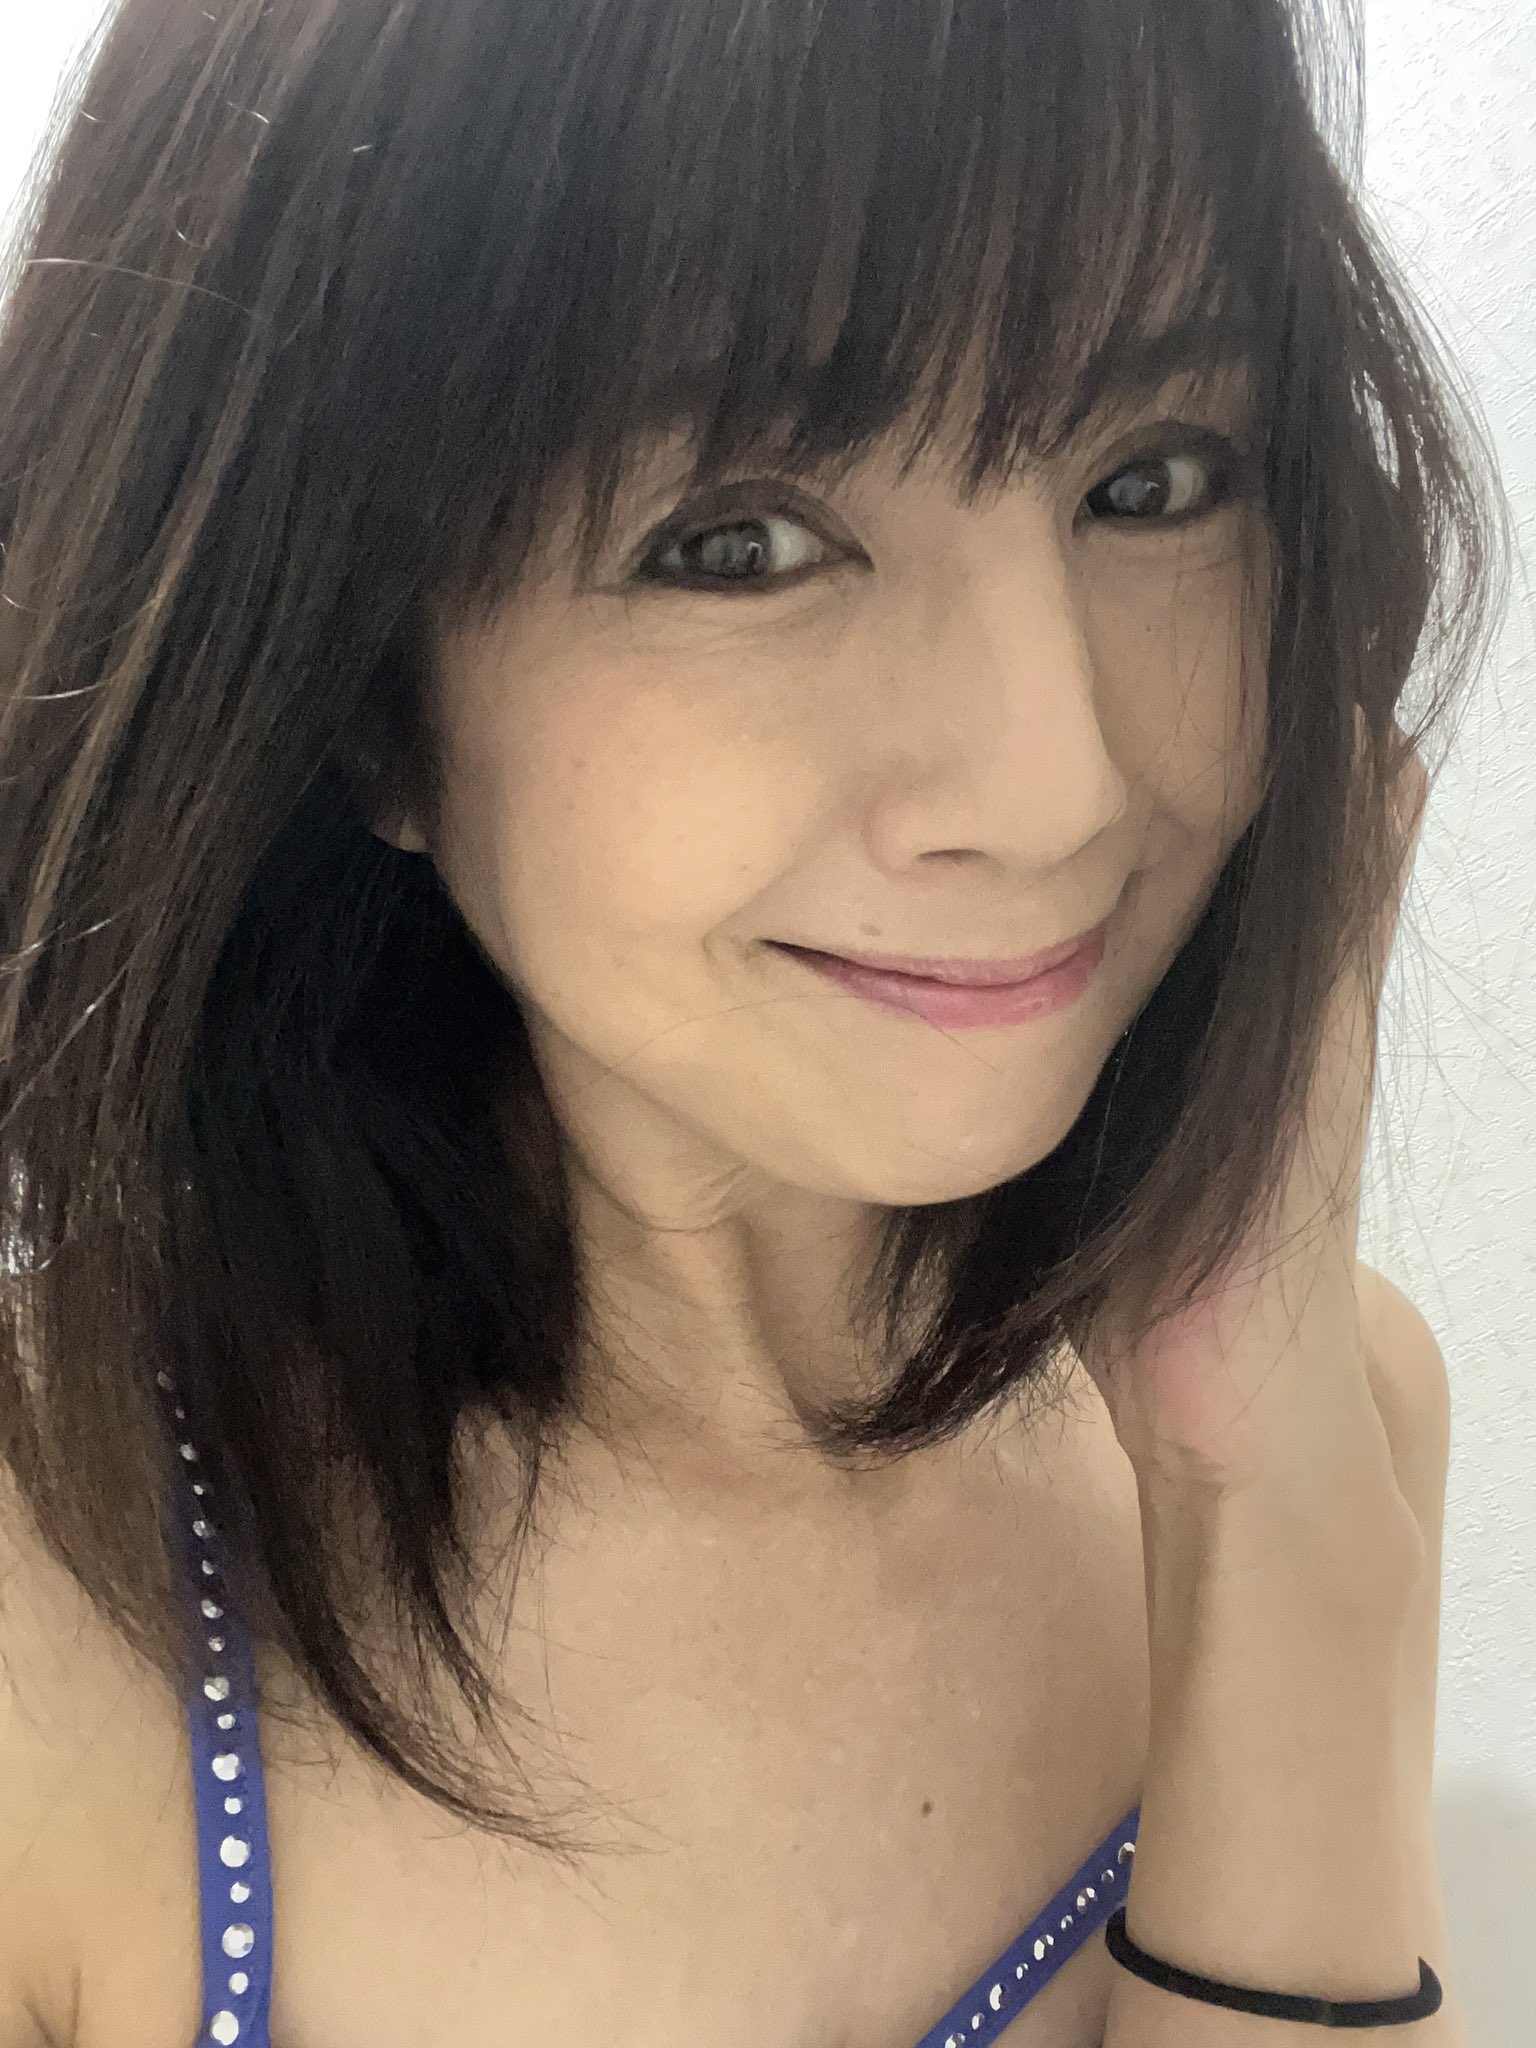 【画像】伝説のセクシー女優・桜木ルイさん(54)があんま変わってない姿で発見される  [851834166]\n_1